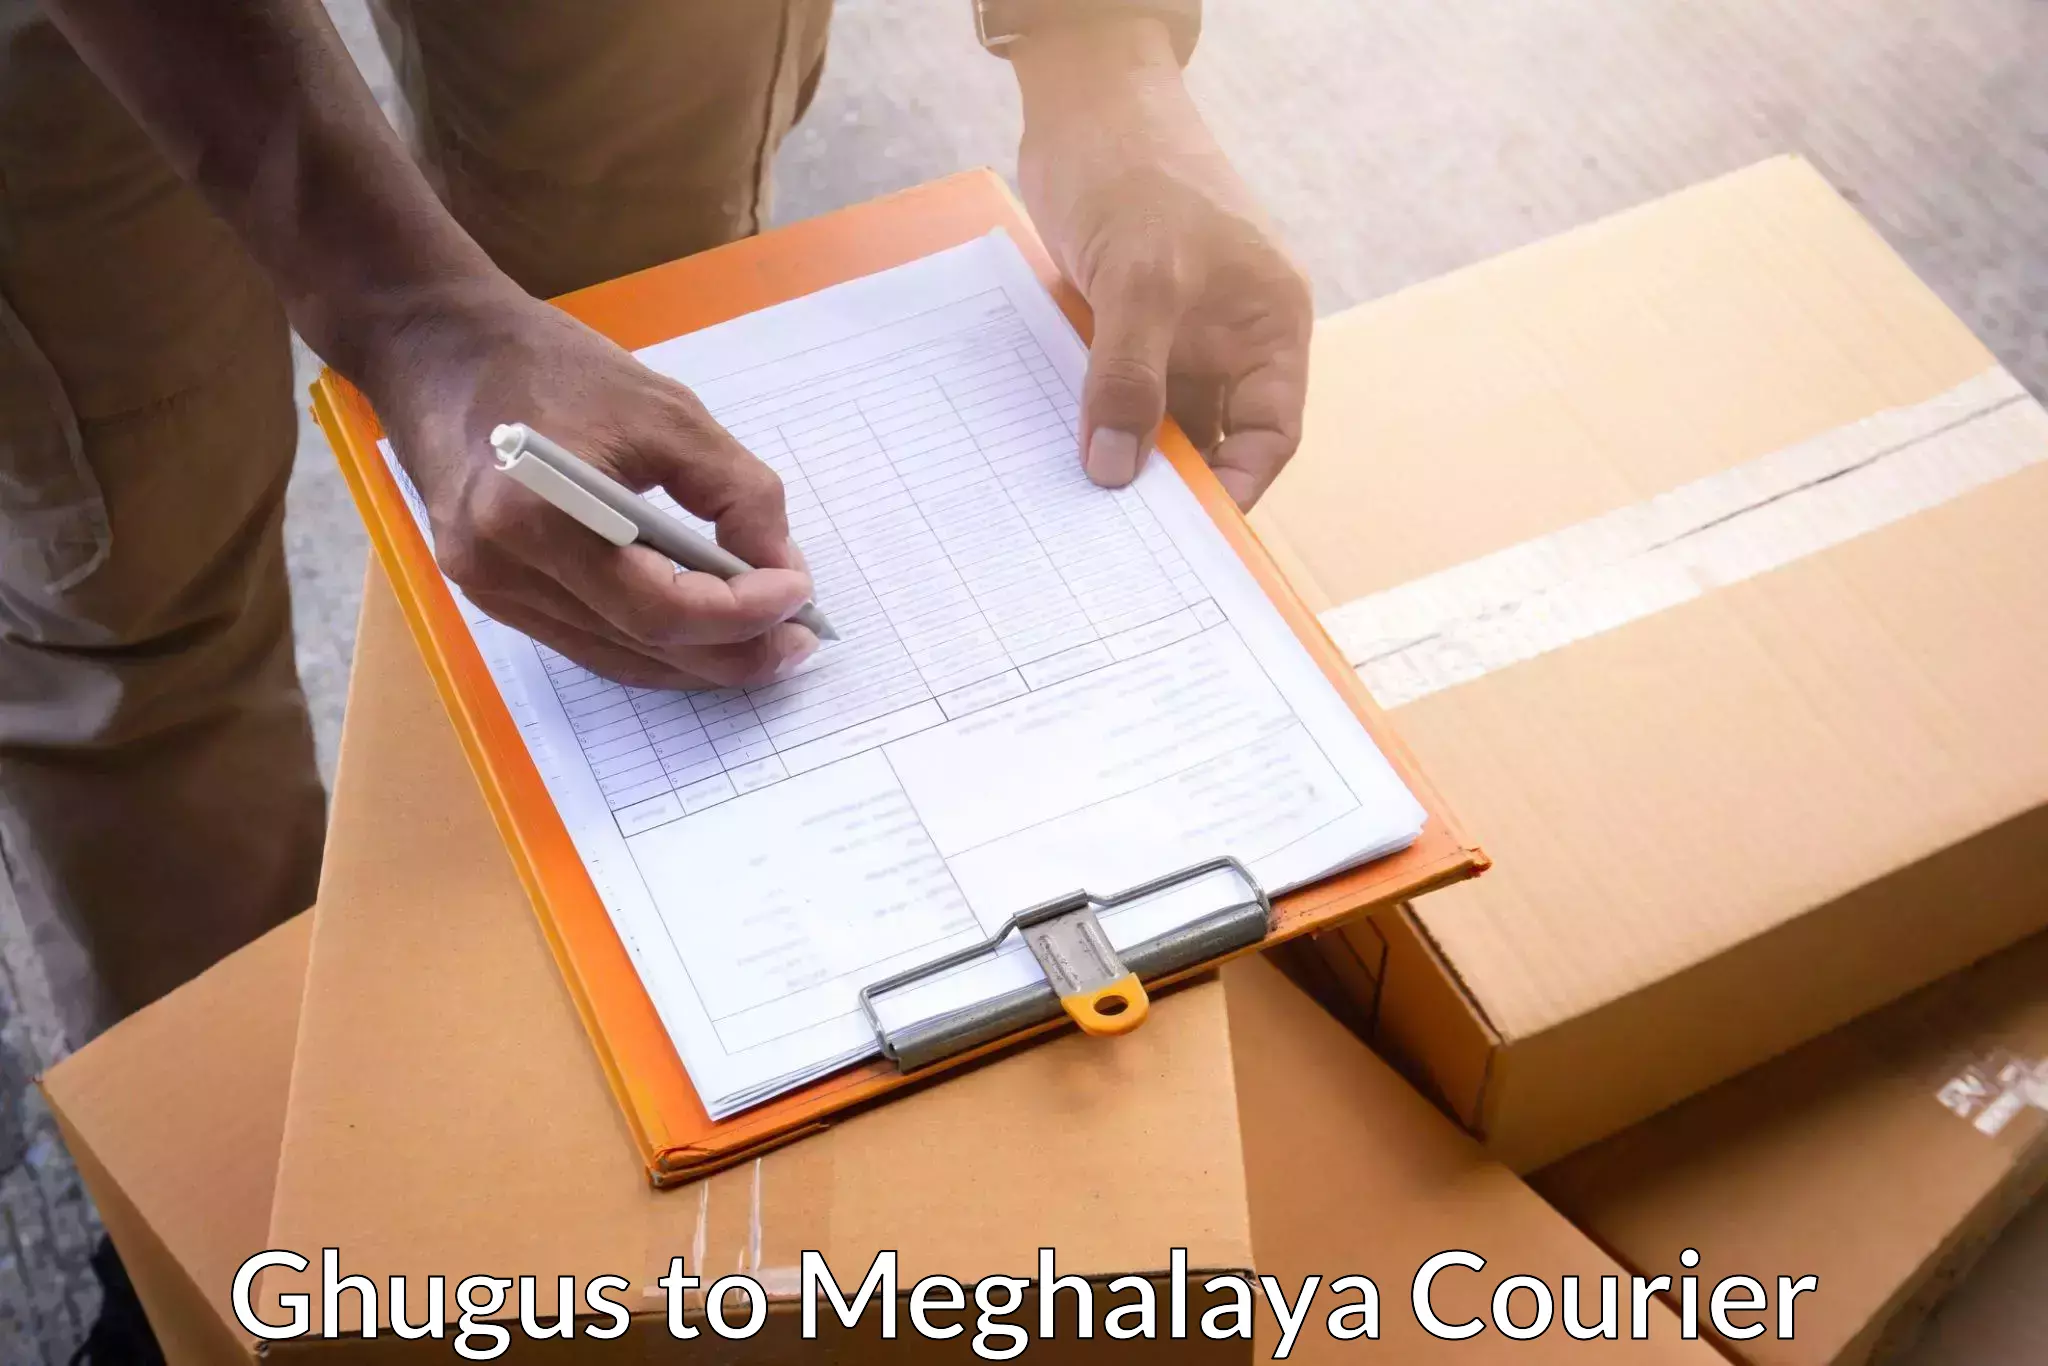 Affordable parcel service Ghugus to Cherrapunji